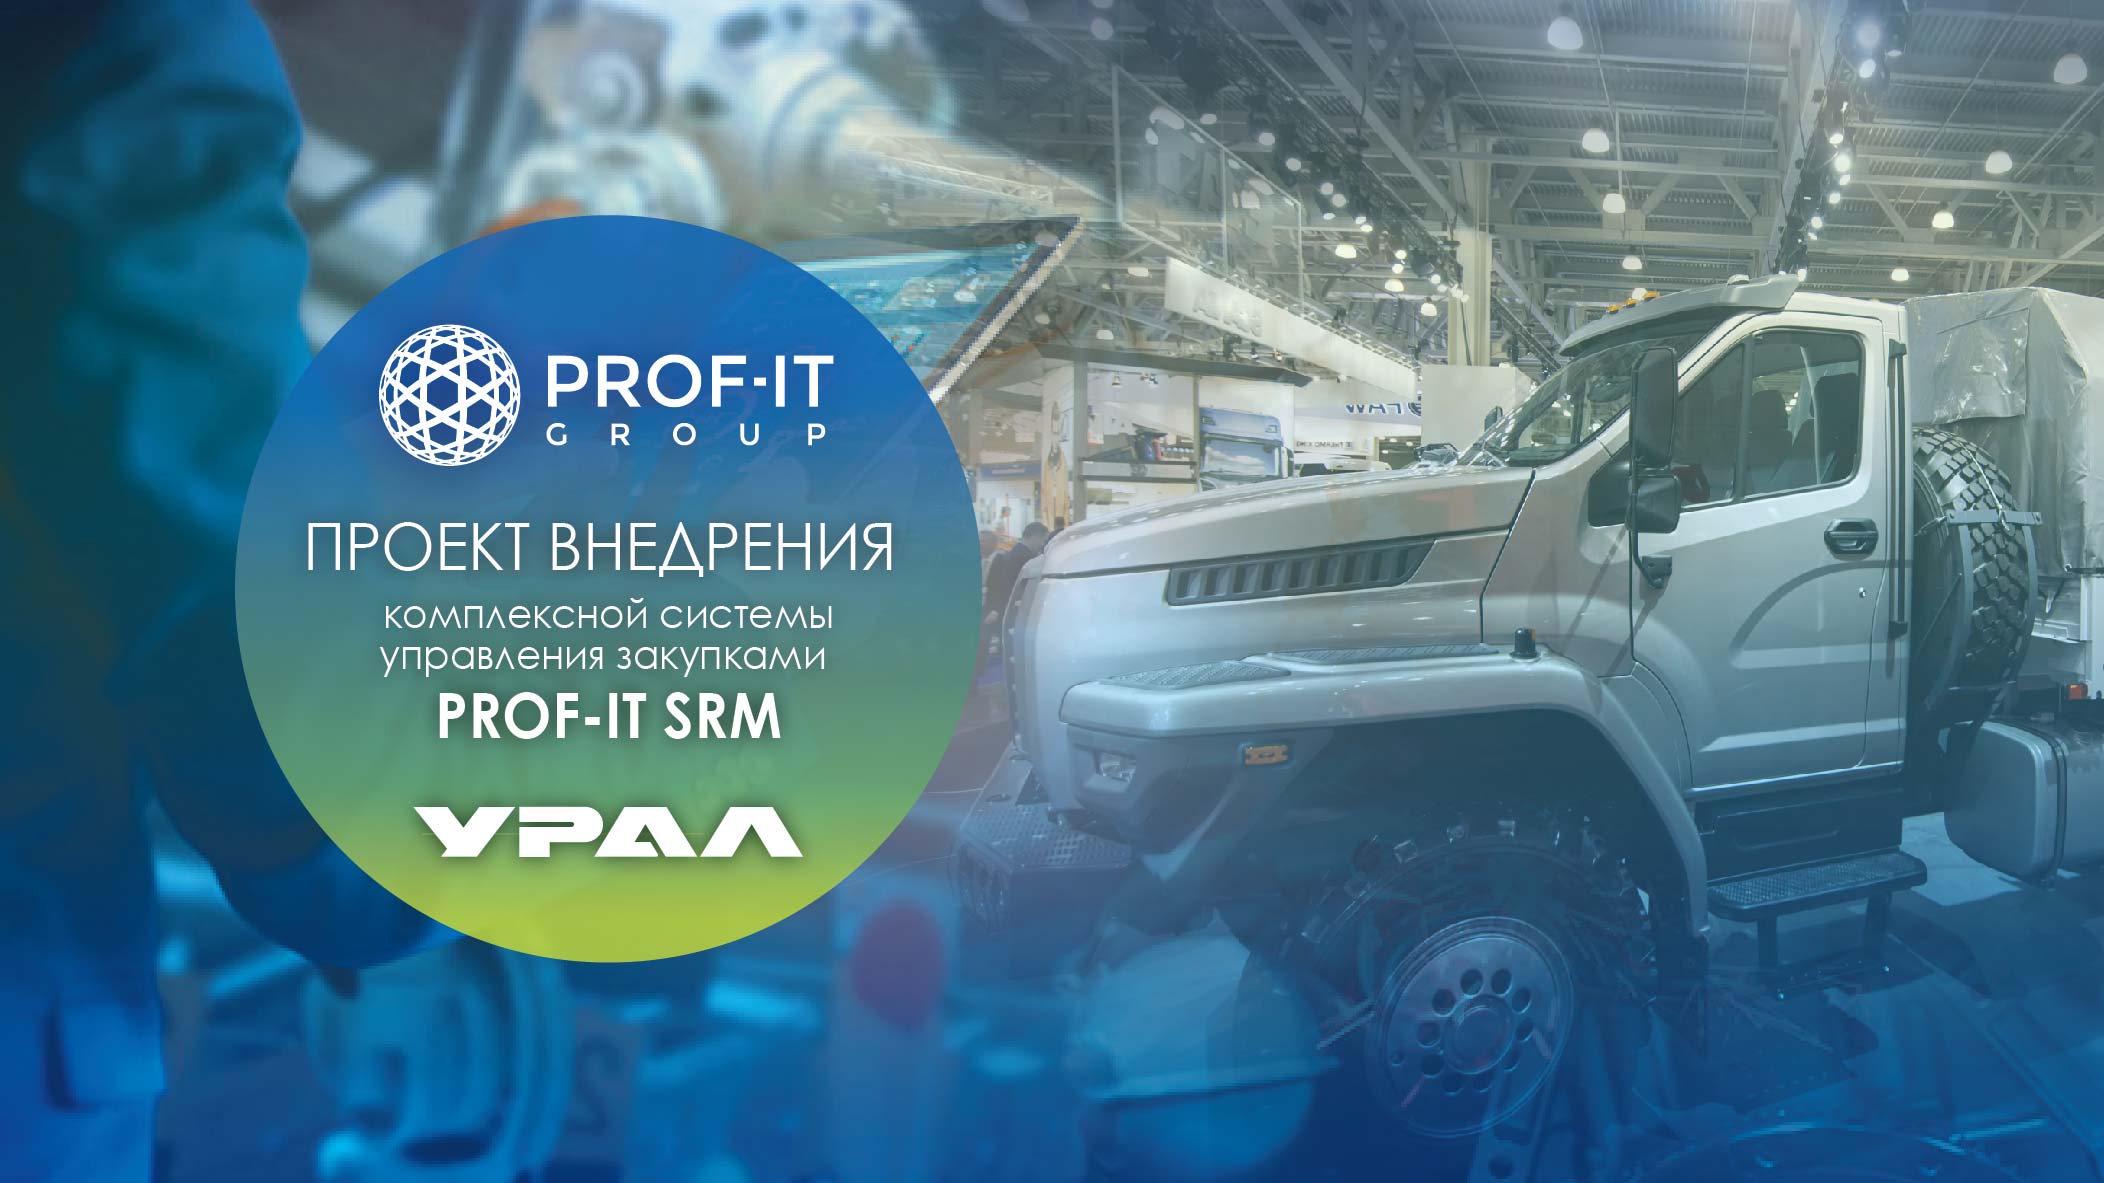 Российский производитель большегрузных автомобилей «УРАЛ» перешел на новую автоматизированную систему управления закупками предприятия от PROF-IT GROUP.